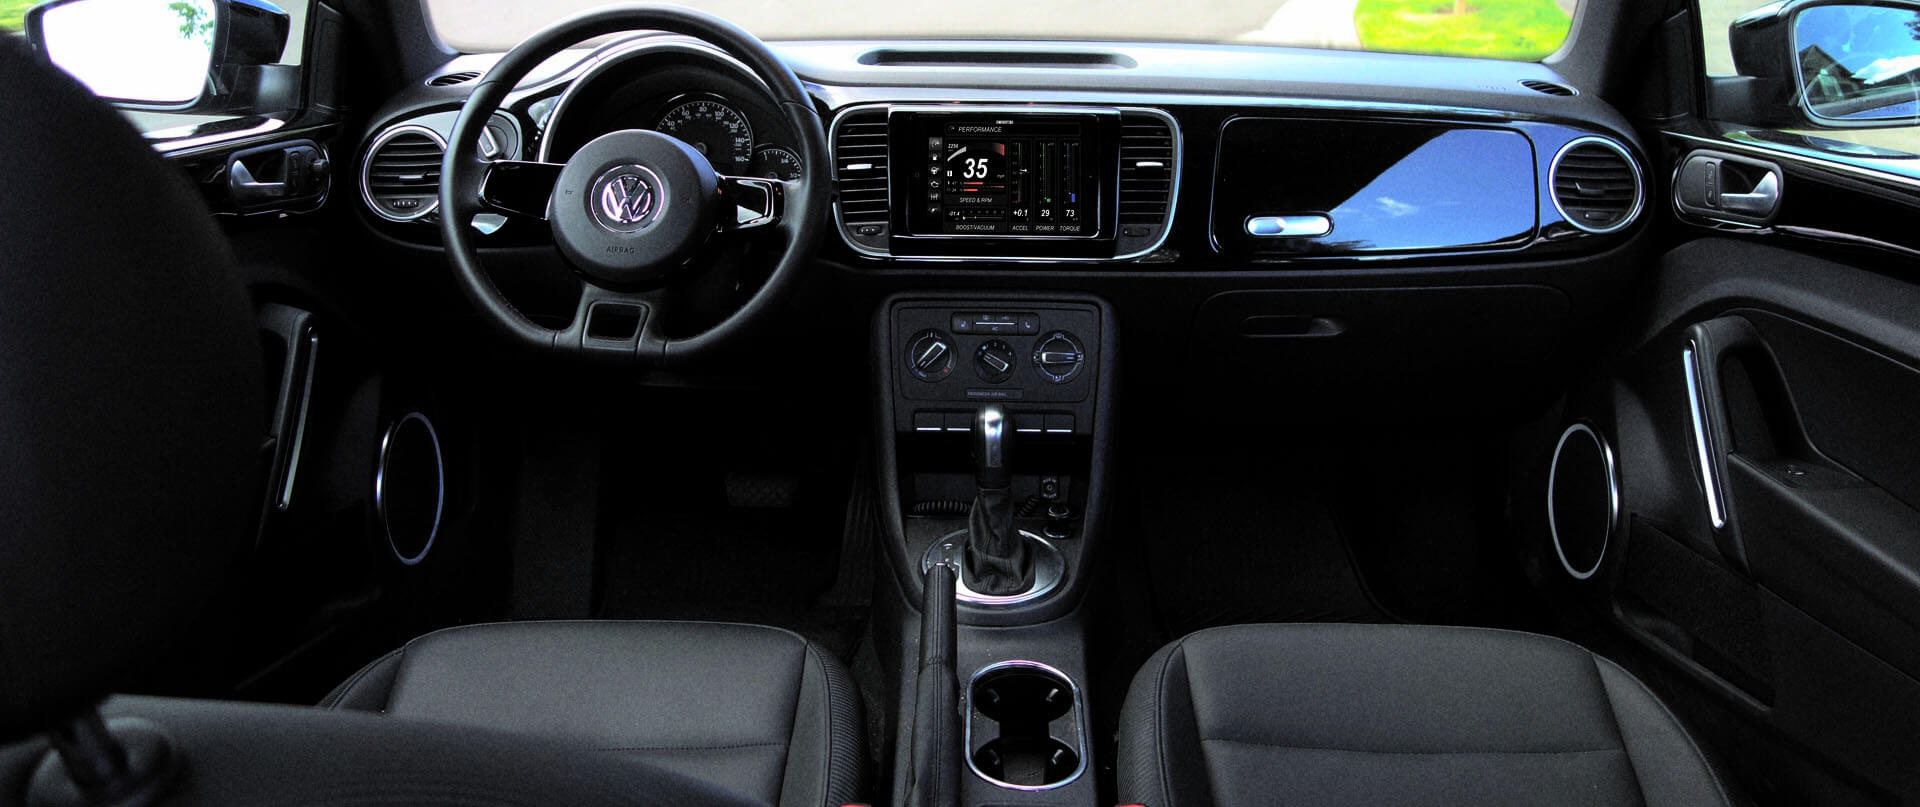 Volkswagen Routan dash kit